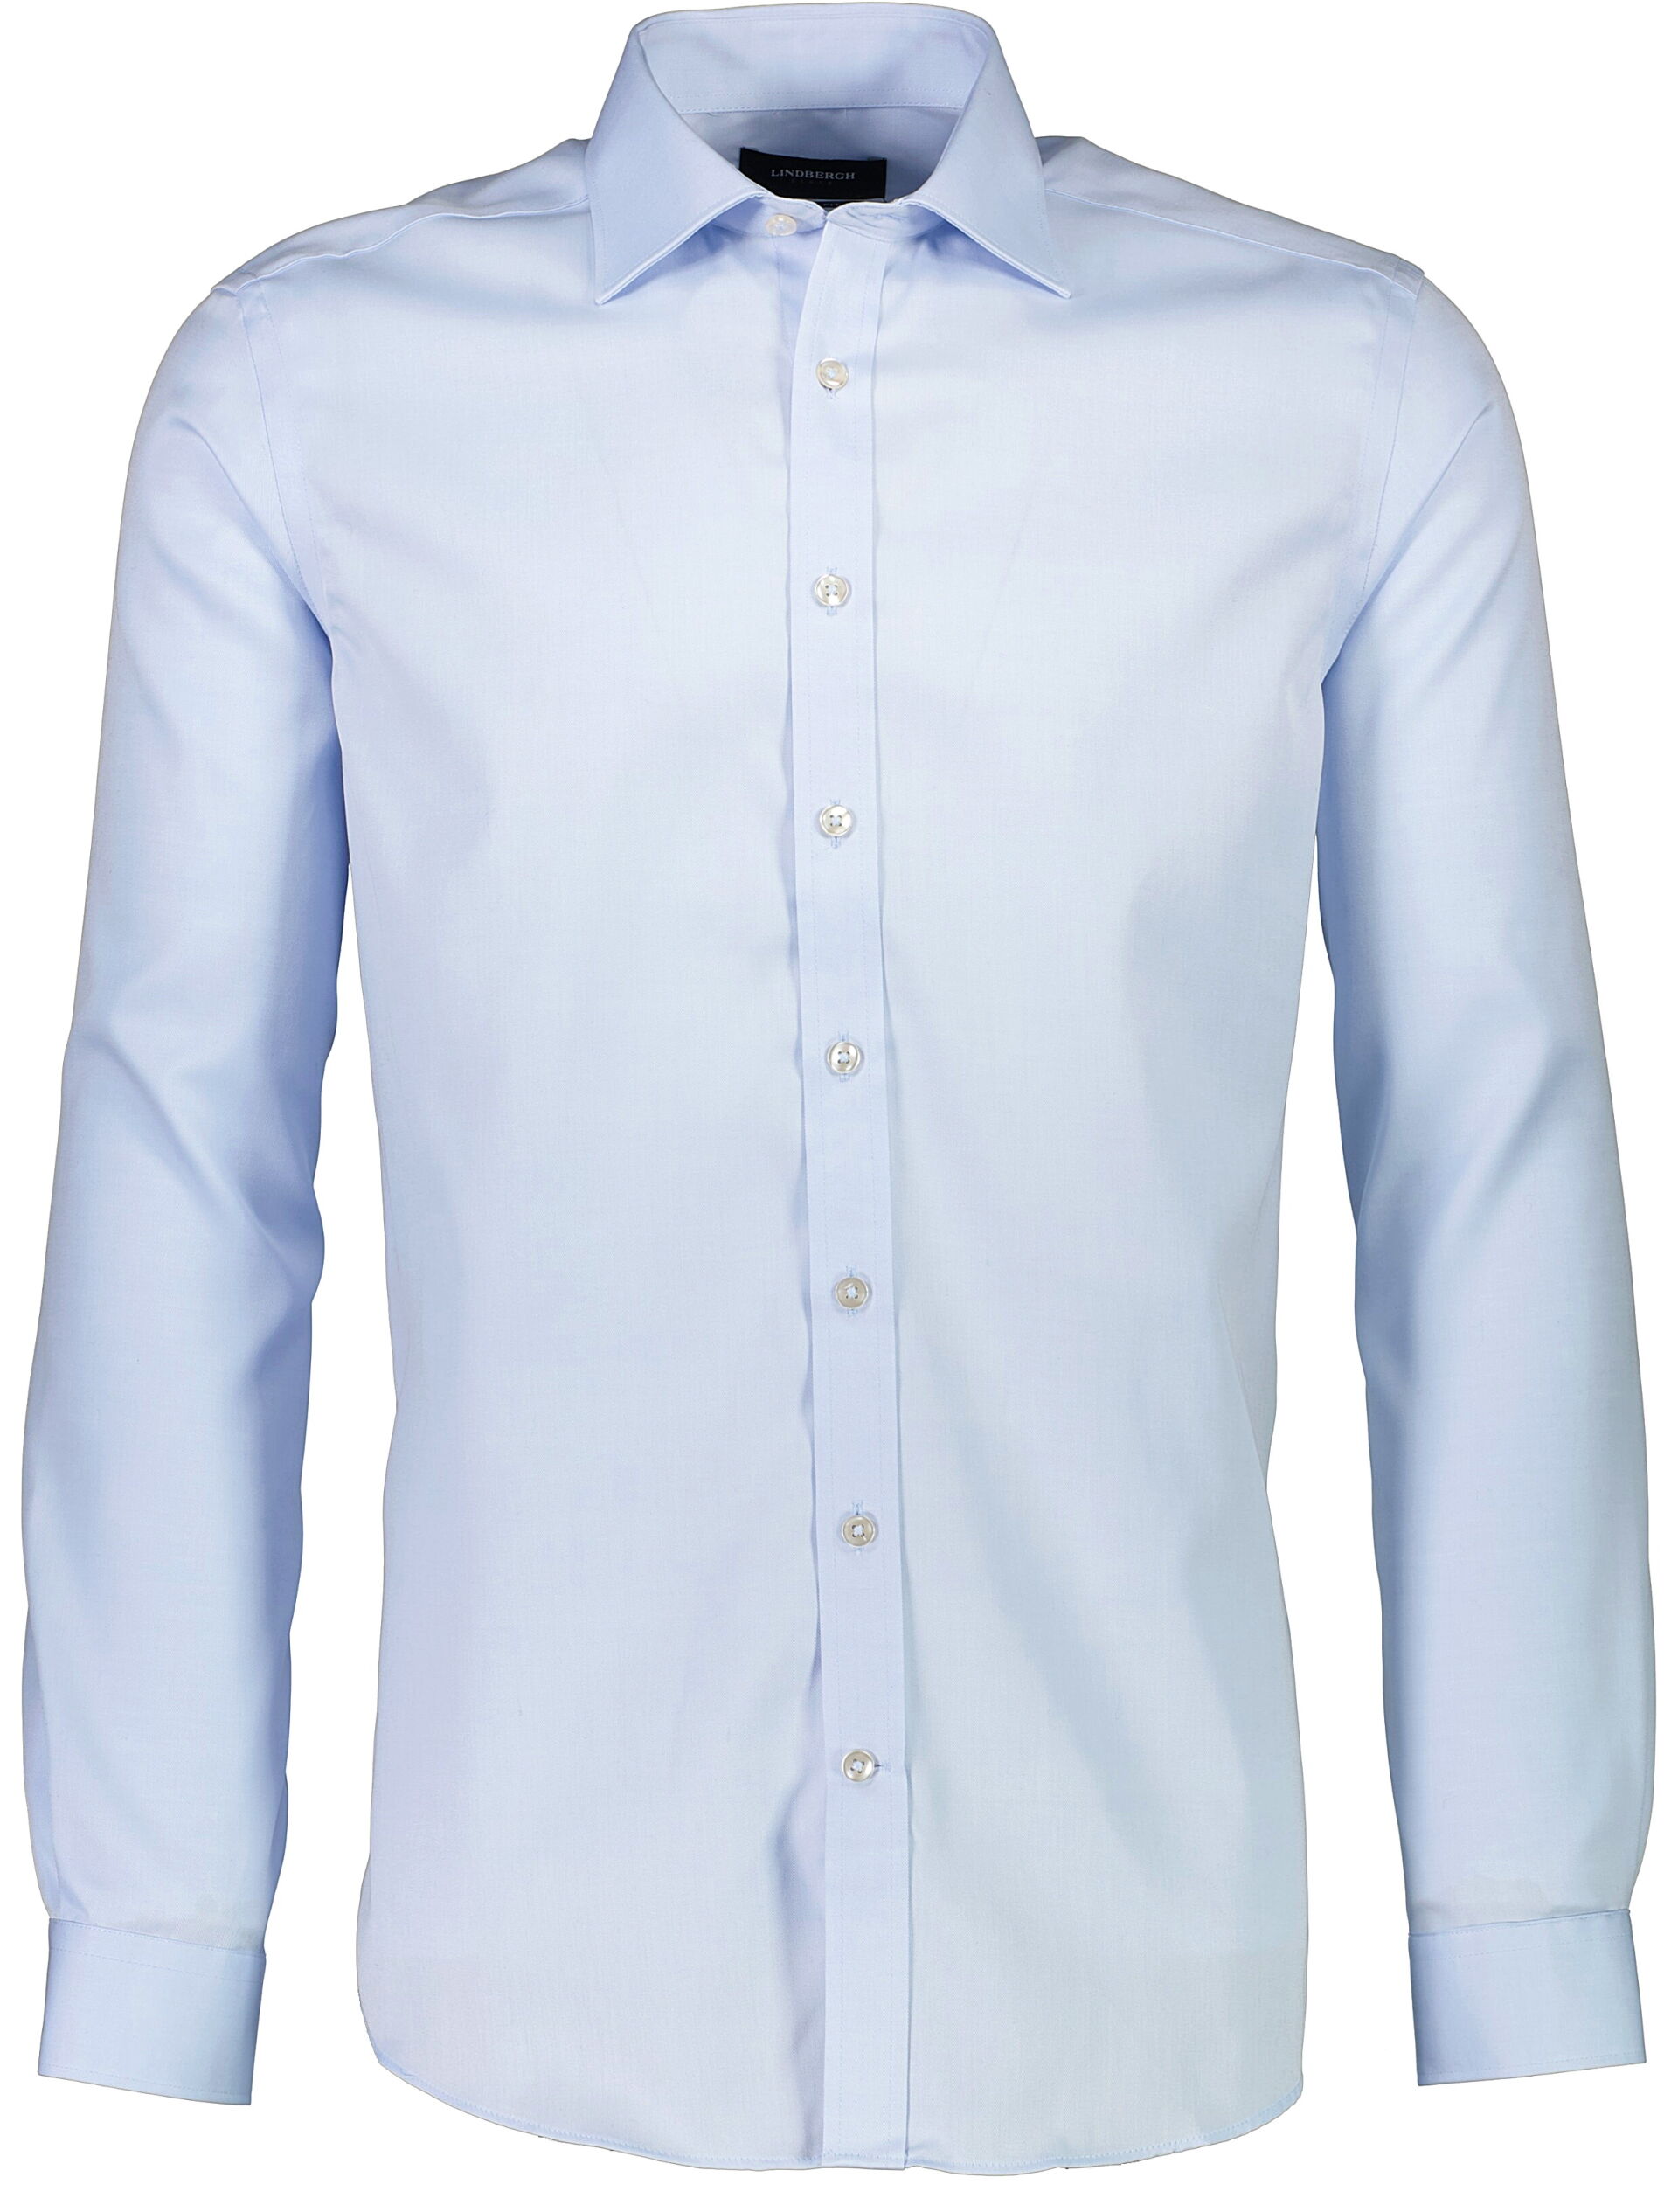 Business shirt Business shirt Blue 30-242130S